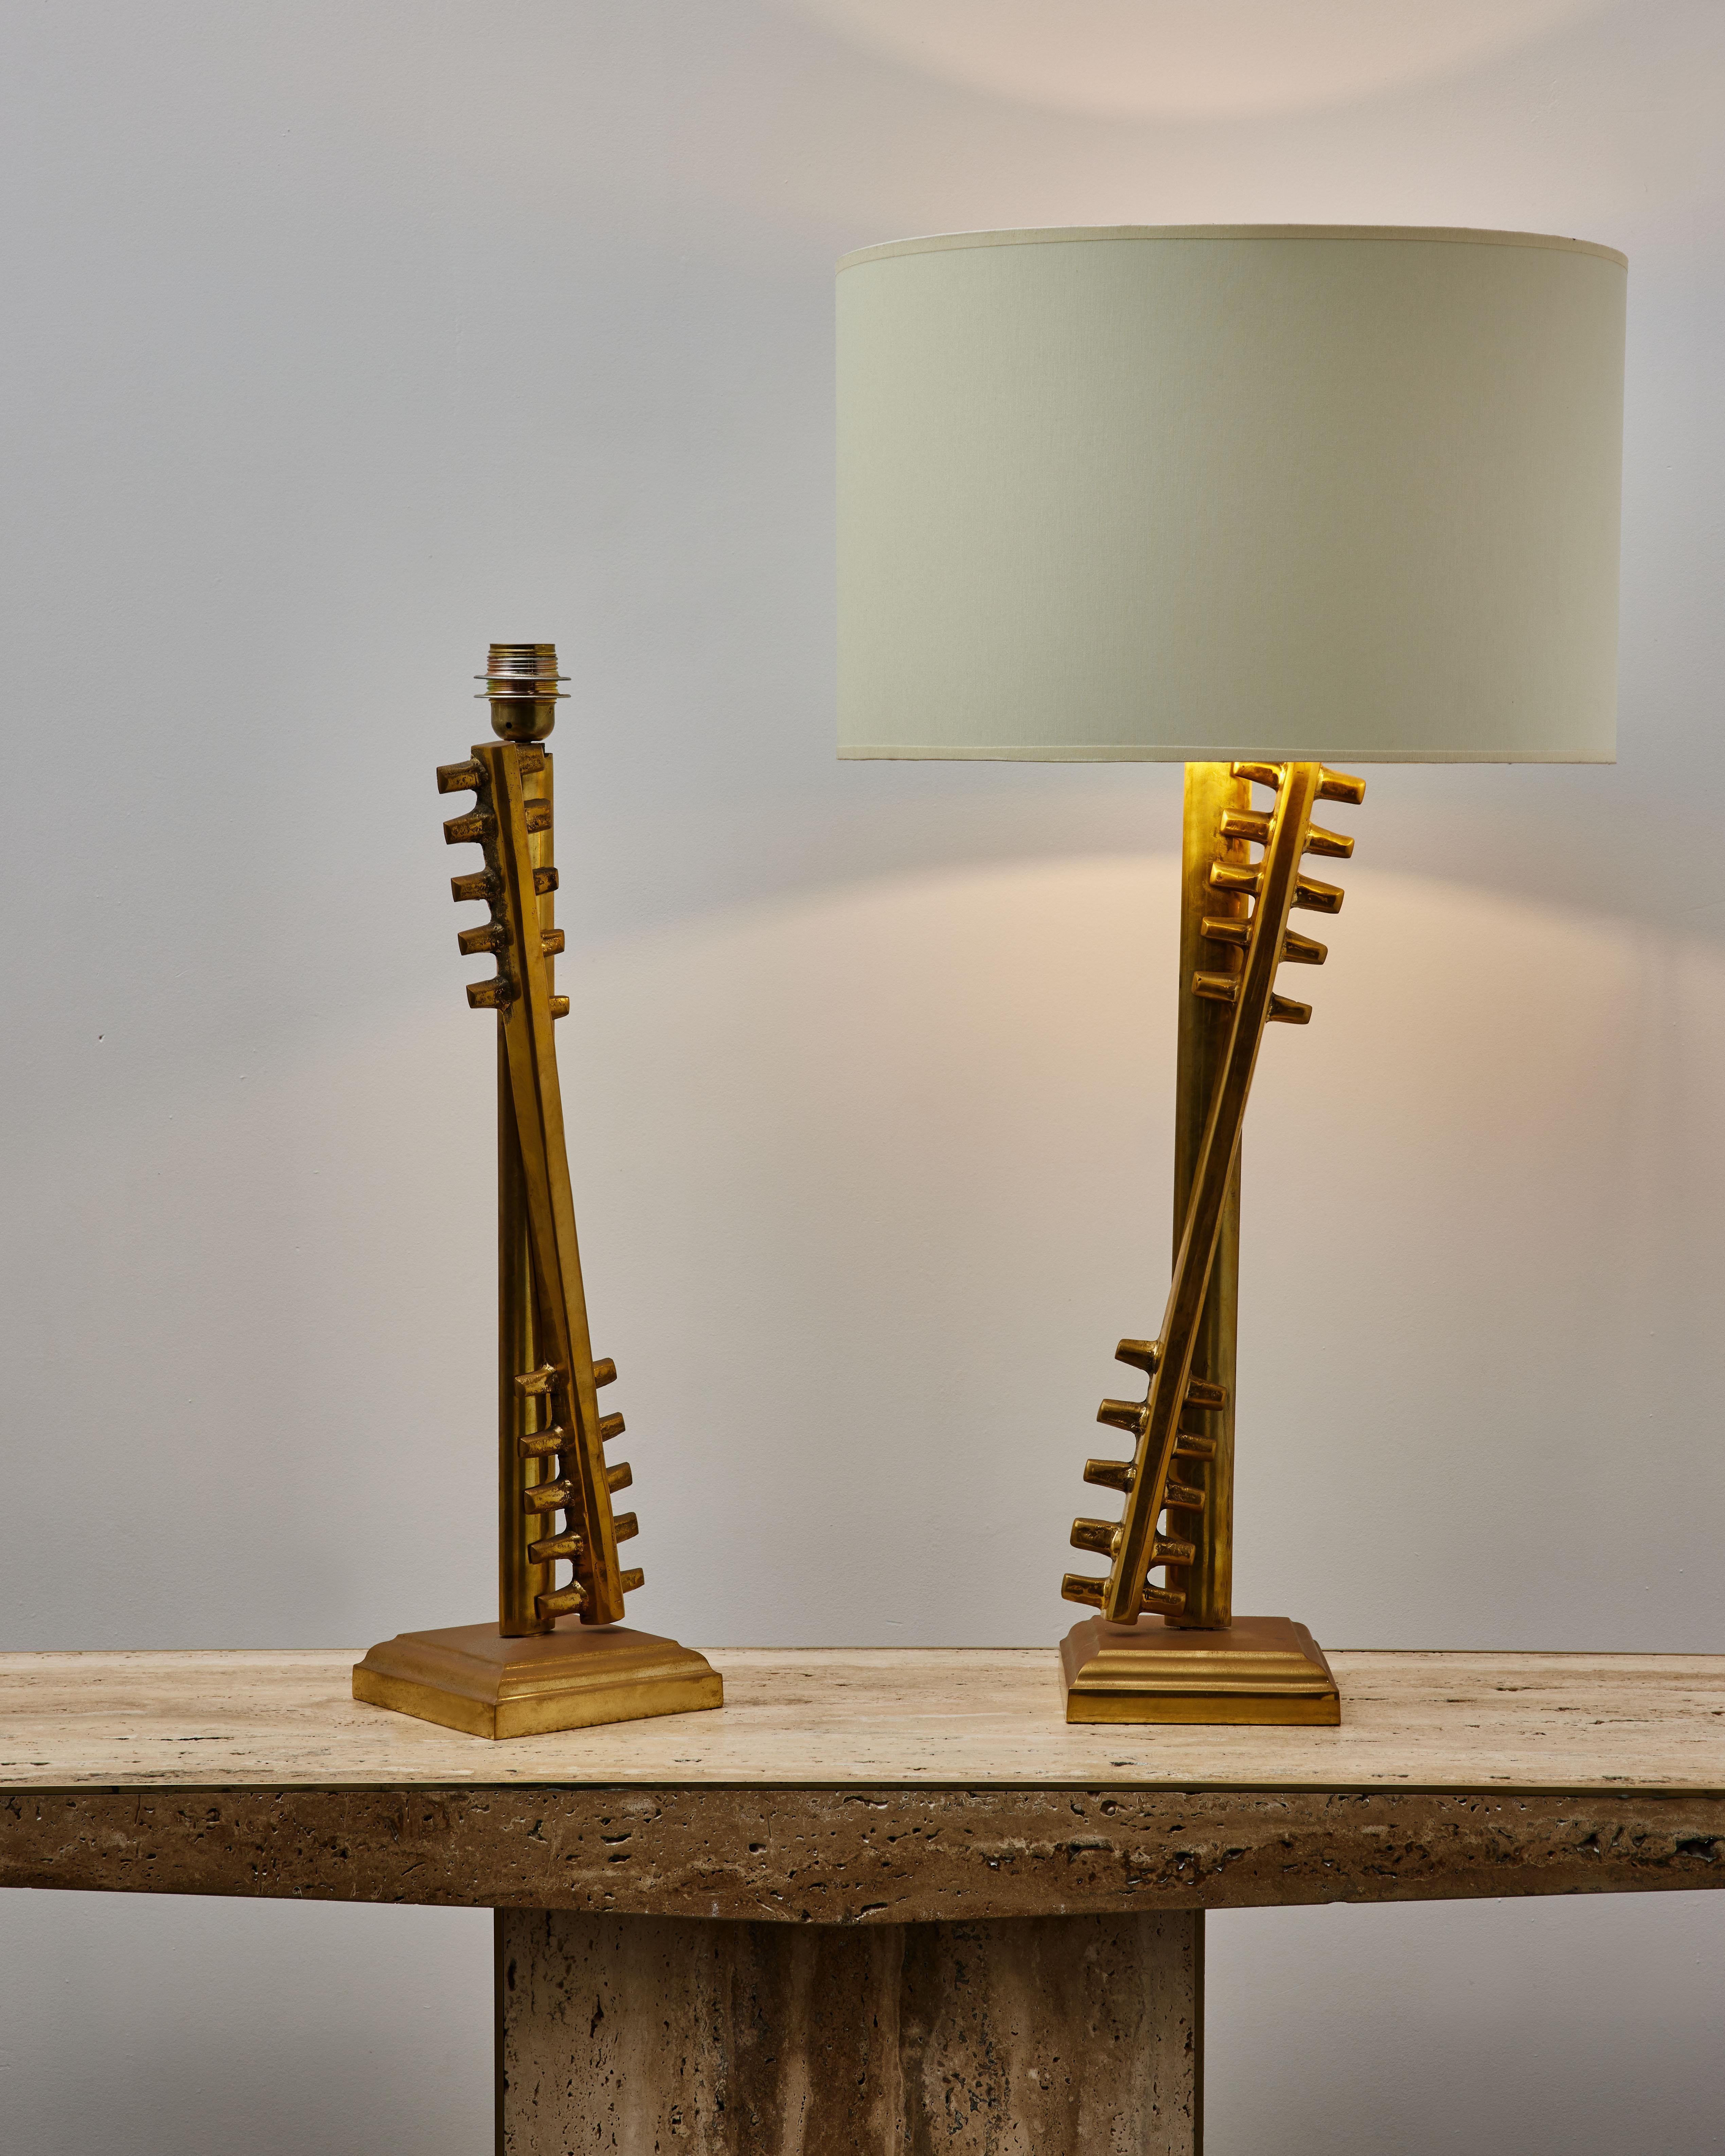 Hervorragendes Paar von Vintage-Tischlampen aus gemeißeltem Messing.
Neu verkabelt.
Frankreich, 1980er Jahre

Preis und Abmessungen ohne Schirme.